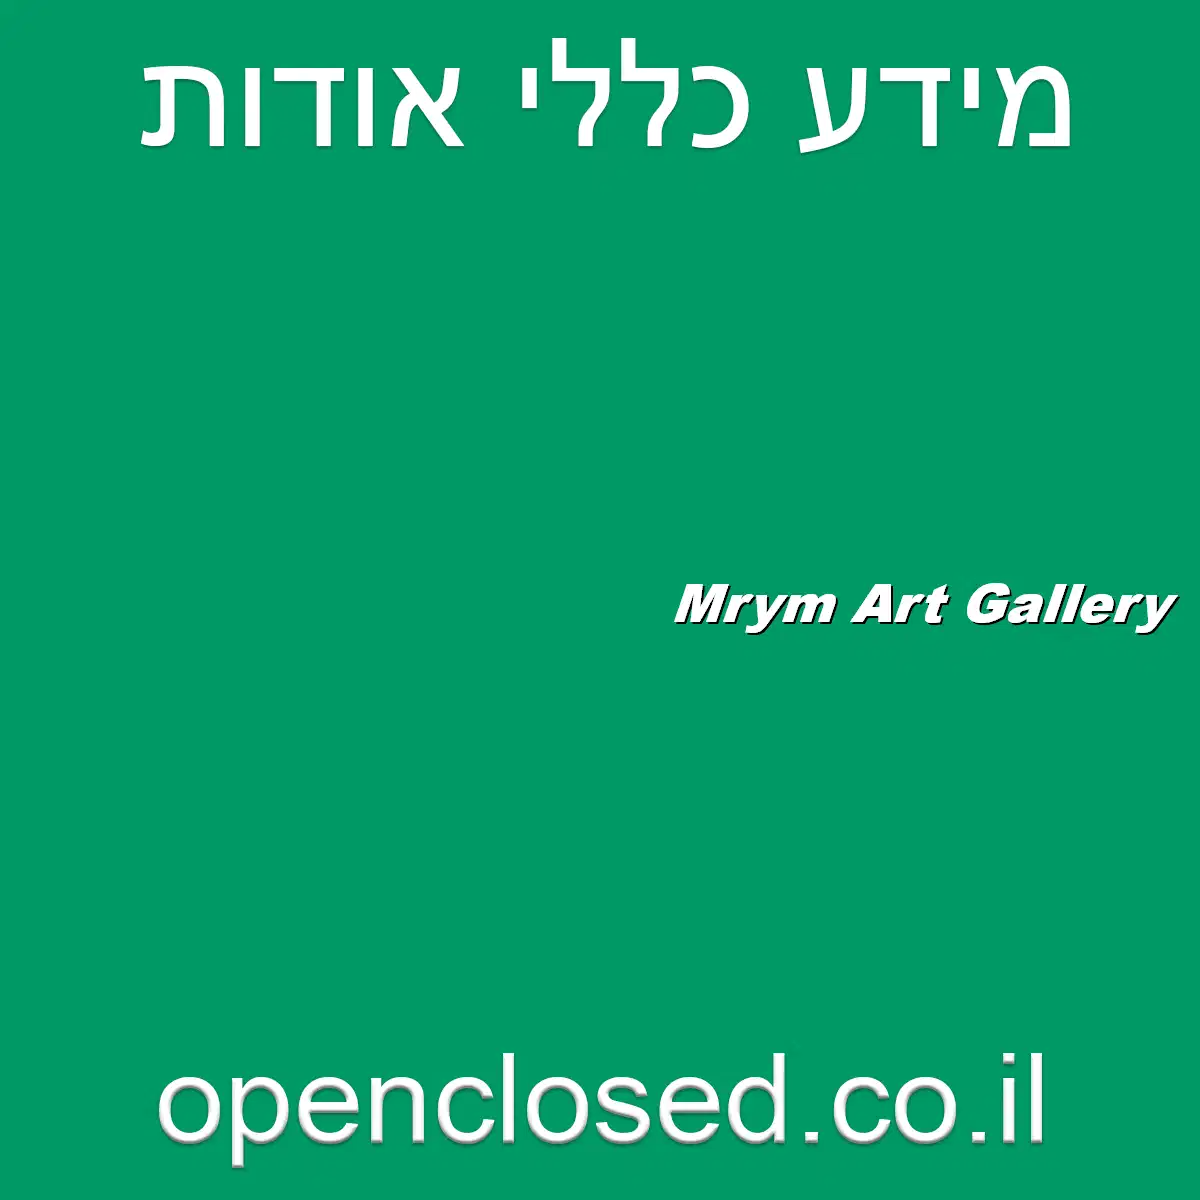 Mrym Art Gallery